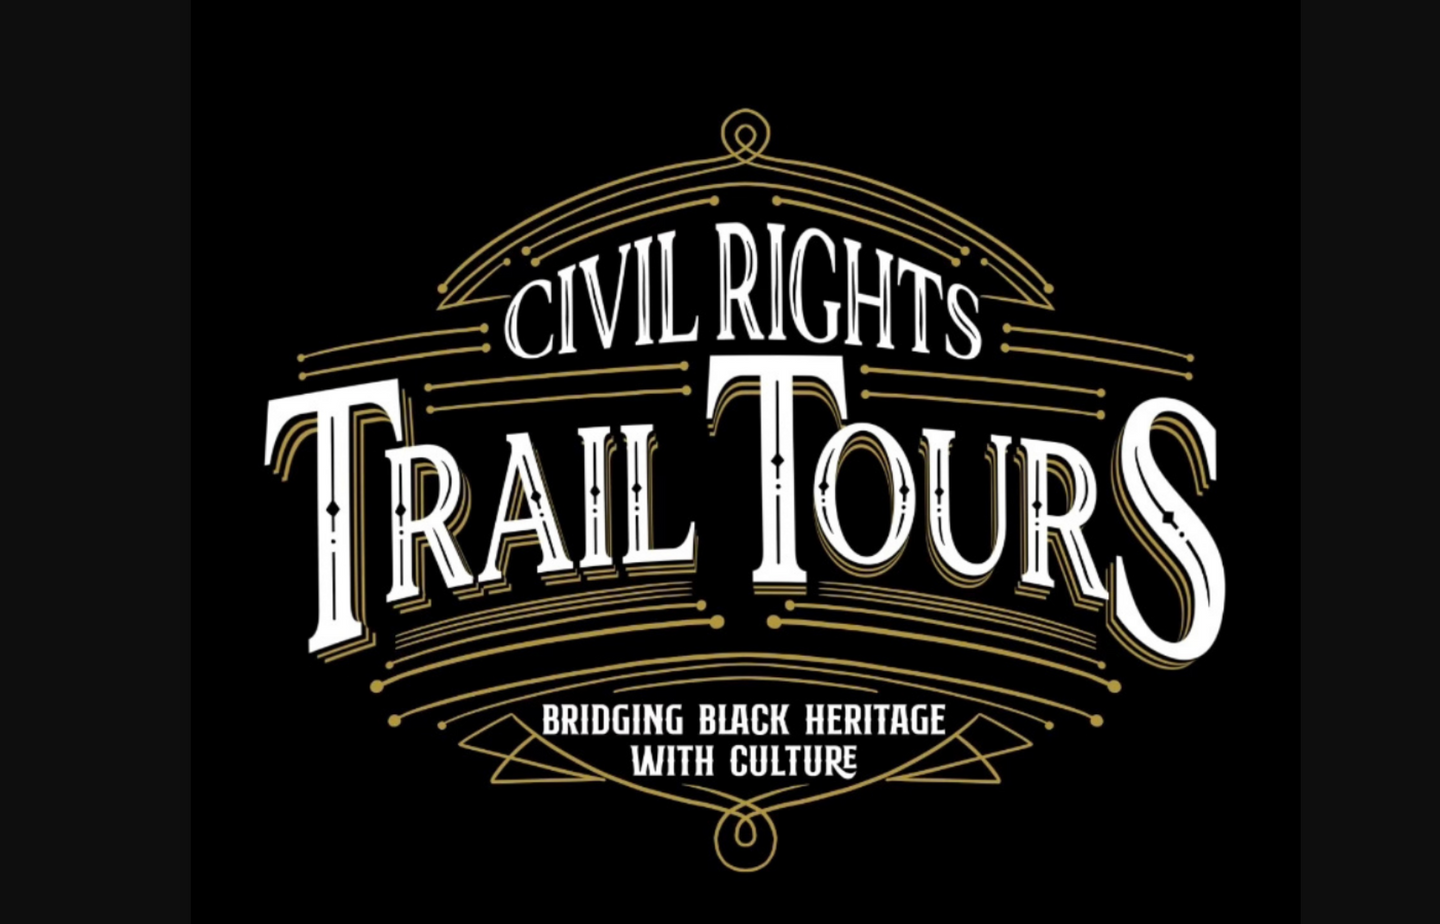 HBCU CIVIL RIGHTS TRAIL TOUR 2